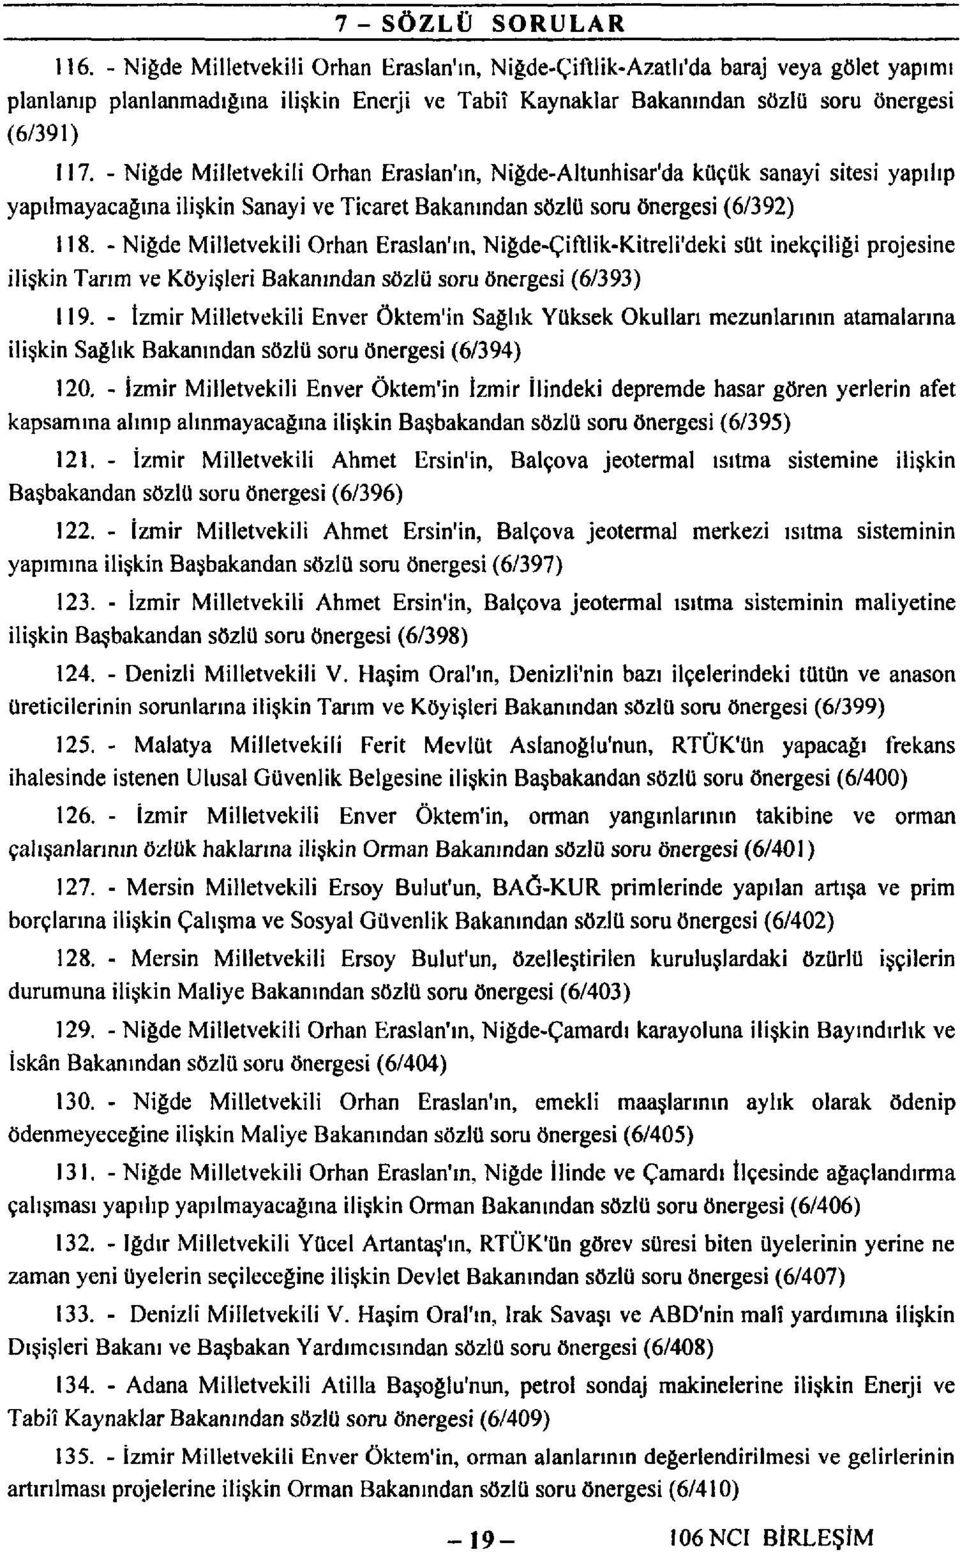 - Niğde Milletvekili Orhan Eraslan'ın, Niğde-Altunhisar'da küçük sanayi sitesi yapılıp yapılmayacağına ilişkin Sanayi ve Ticaret Bakanından sözlü soru önergesi (6/392) 118.